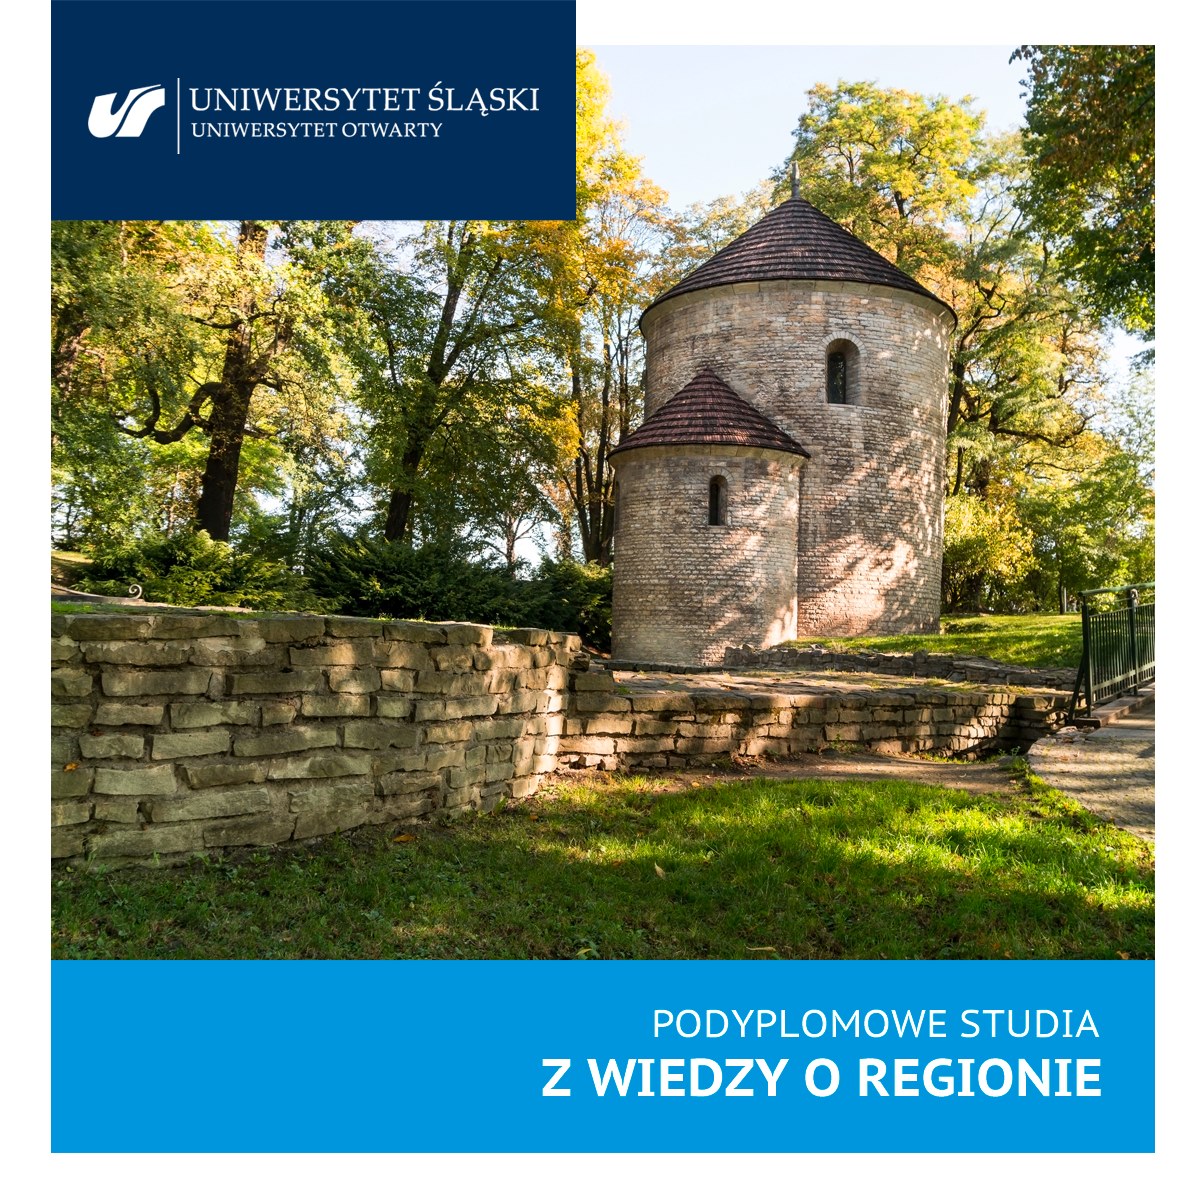 grafika promująca rekrutację na podyplomowe studia wiedzy o regionie - zdjęcie rotundy w Cieszynie